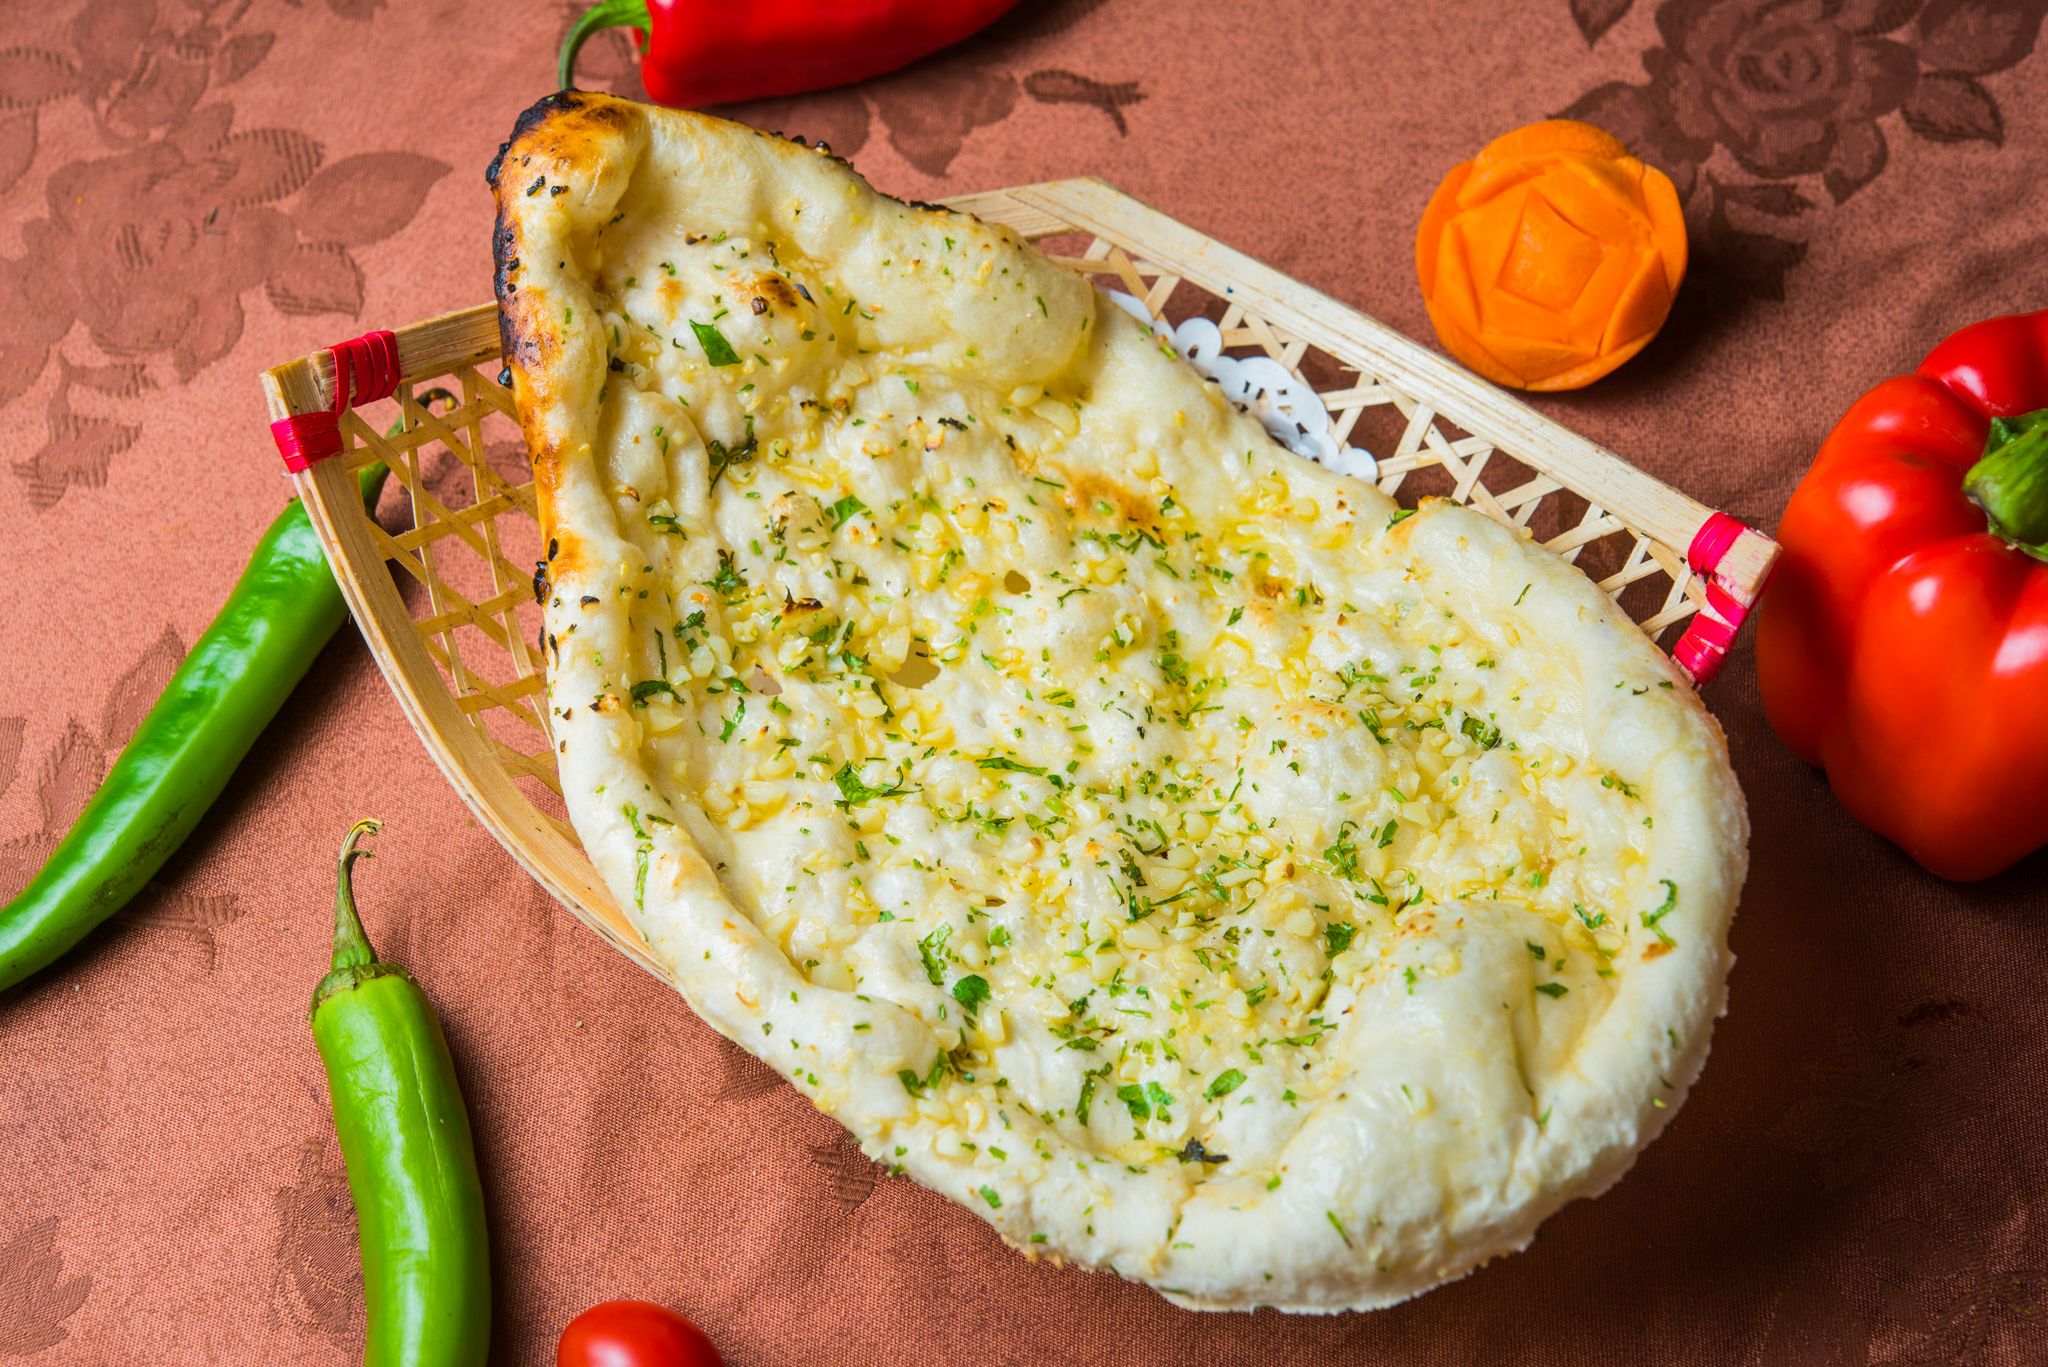 印度大蒜烤餅 Indian Garlic Naan 手打麵皮鋪上新鮮大蒜以傳統印度坦都窯烤爐高溫烘焙出爐後抹上香醇奶油